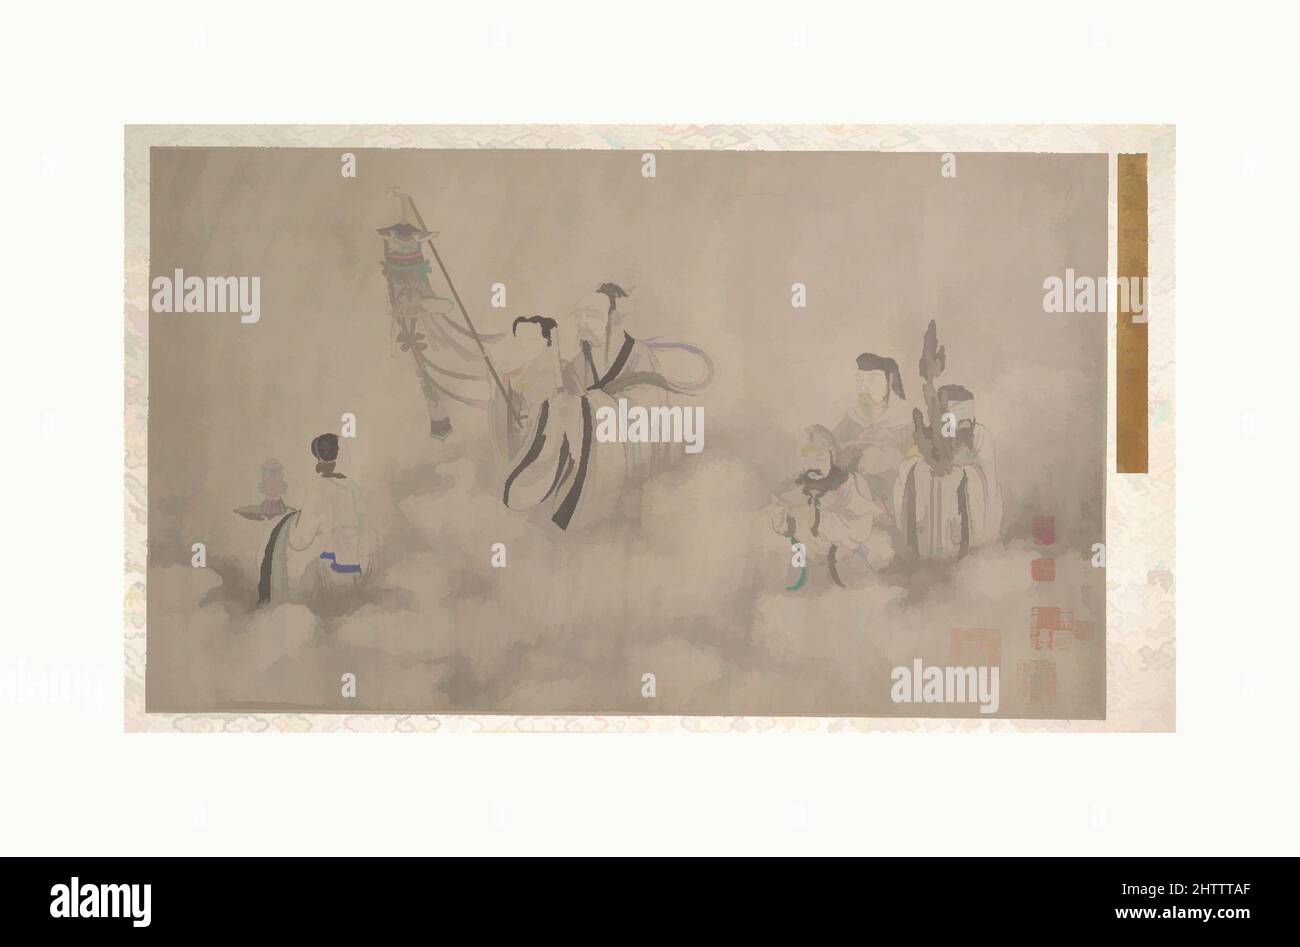 Art inspiré par la procession des Arhats, la dynastie Ming (1368–1644) ou Qing (1644–1911), Chine, Album de dix feuilles; encre sur soie, (a): 11 7/8 x 20 po. (30,2 x 50,8 cm) ; (b) : 11 x 10 po (27,9 x 25,4 cm) ; (c) : 11 3/4 x 16 1/4 po. (29,8 x 41,3 cm) ; (d) 11 7/8 x 14 5/8 po. (30,2 x 37,1 cm); (e, œuvres classiques modernisées par Artotop avec une touche de modernité. Formes, couleur et valeur, impact visuel accrocheur sur l'art émotions par la liberté d'œuvres d'art d'une manière contemporaine. Un message intemporel qui cherche une nouvelle direction créative. Artistes qui se tournent vers le support numérique et créent le NFT Artotop Banque D'Images